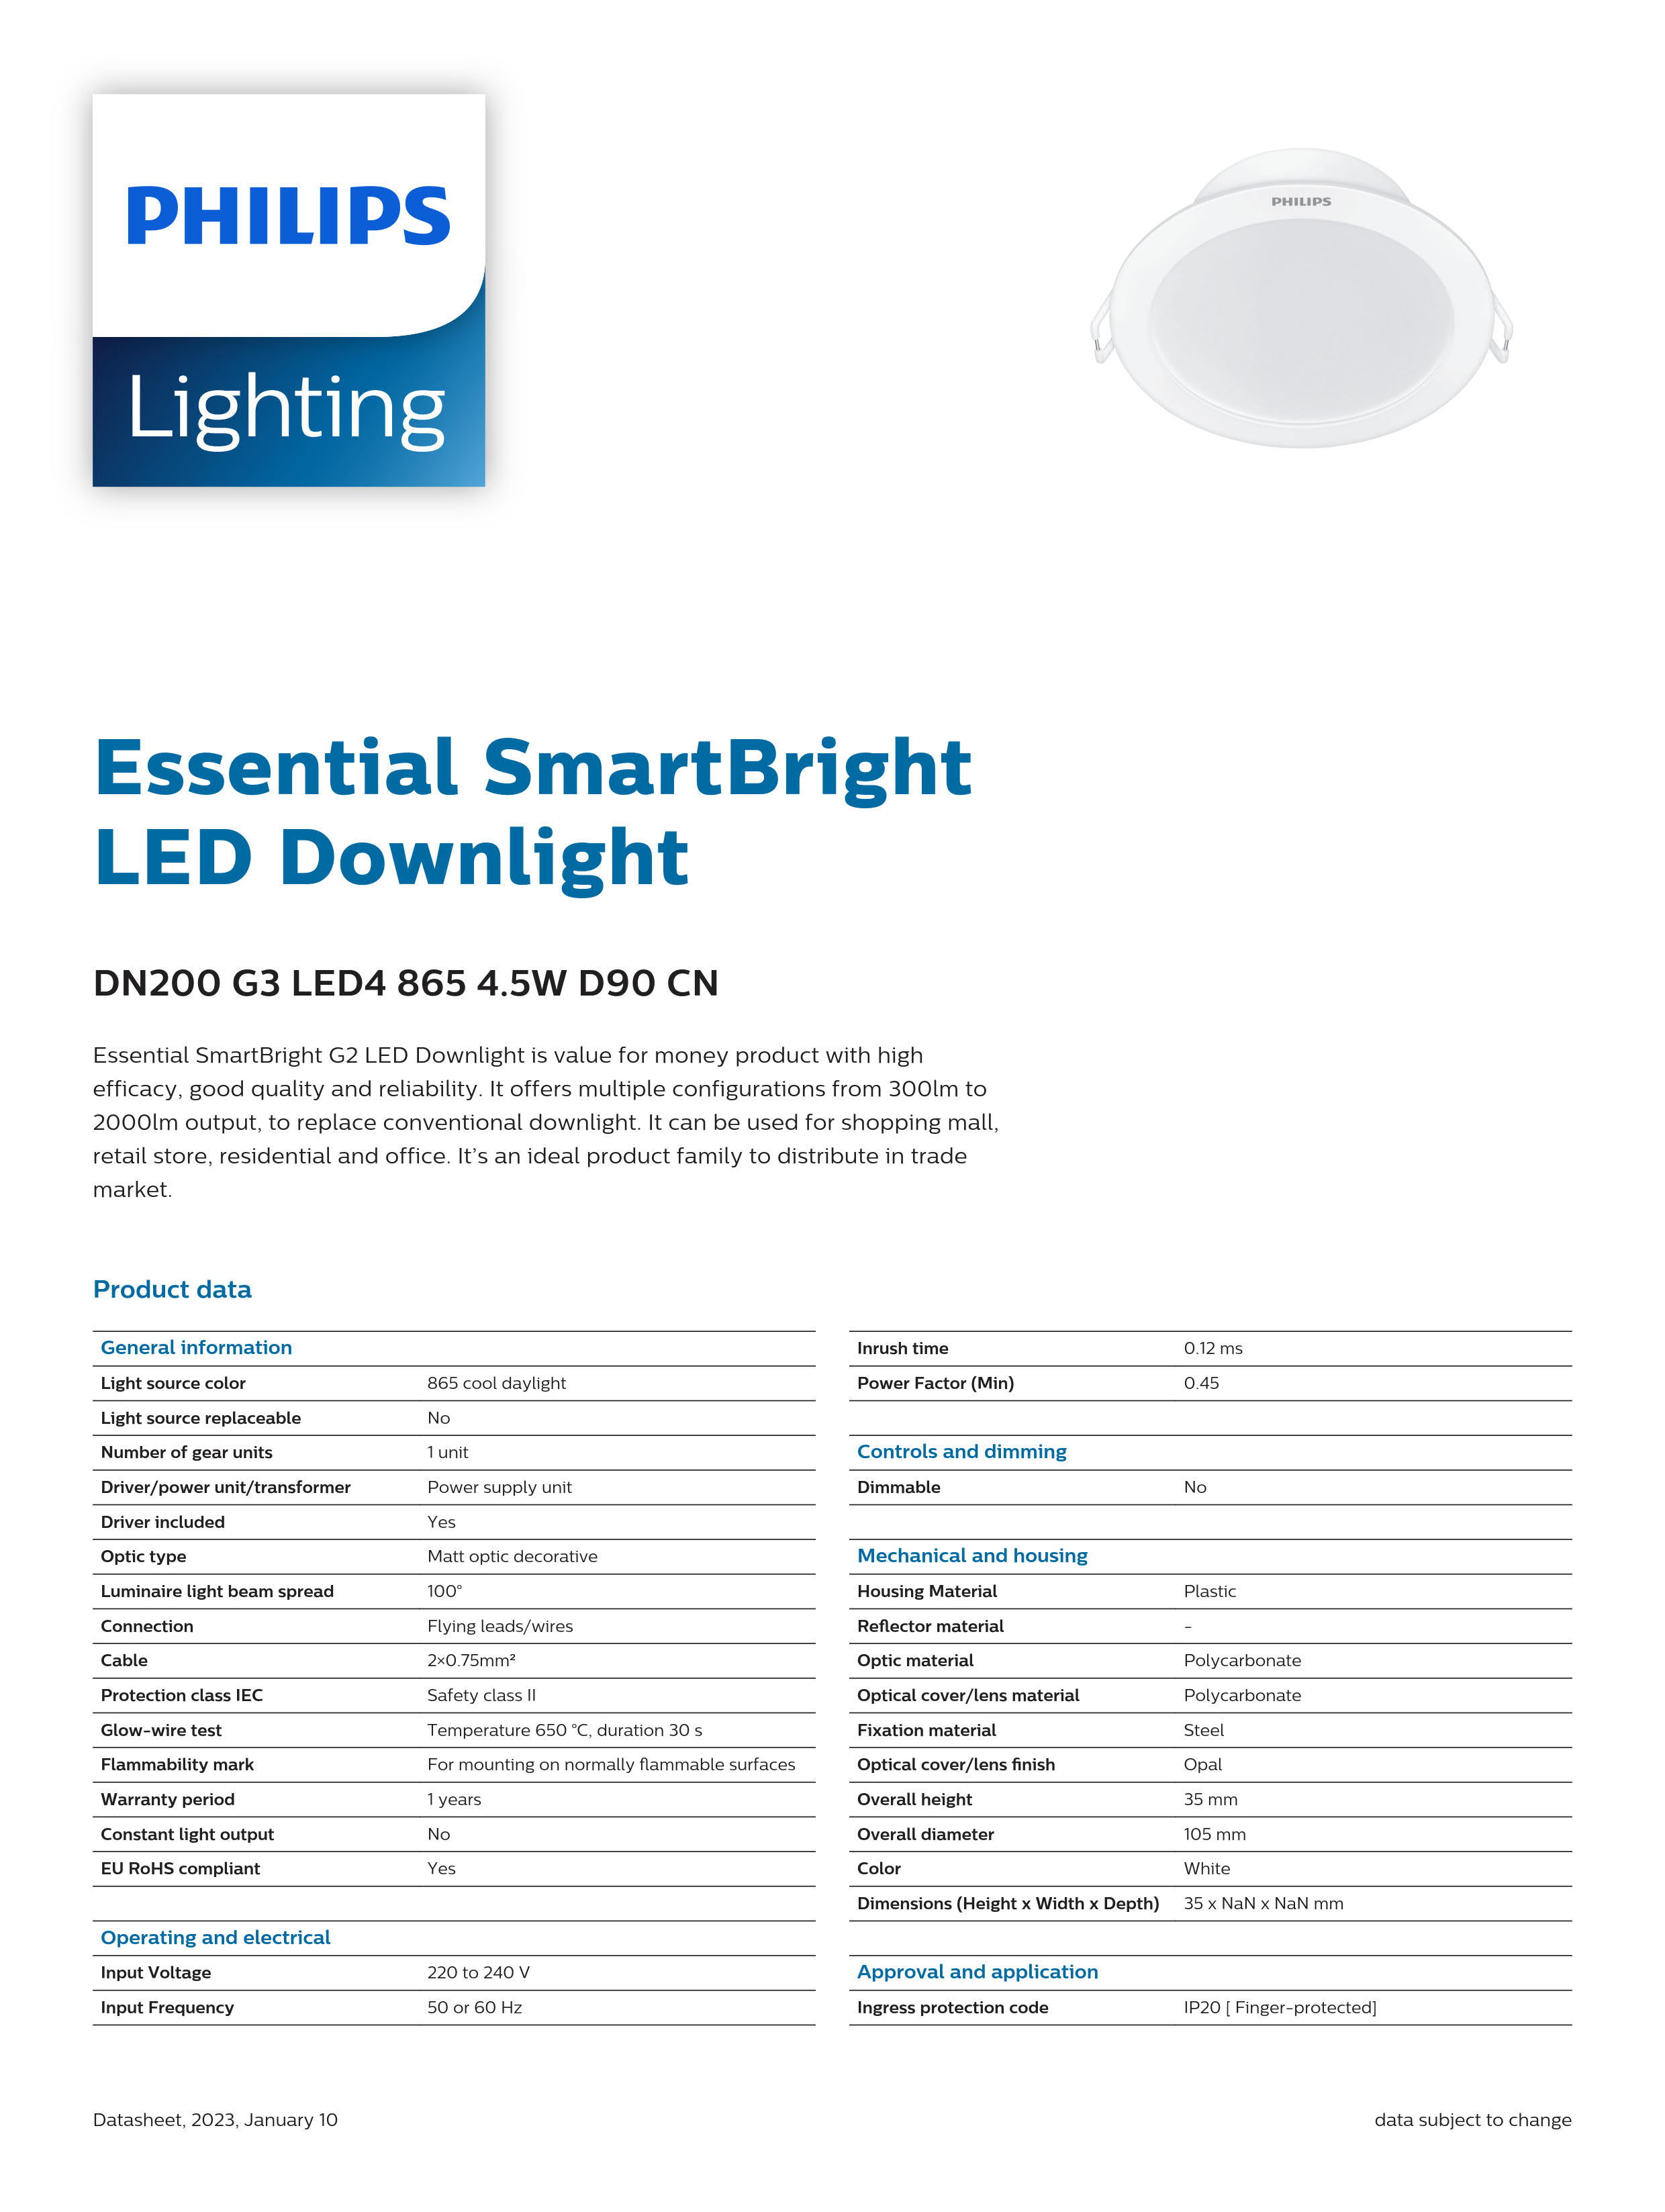 PHILIPS LED Downlight DN200 G3 LED4 865 4.5W D90 CN 929003270010